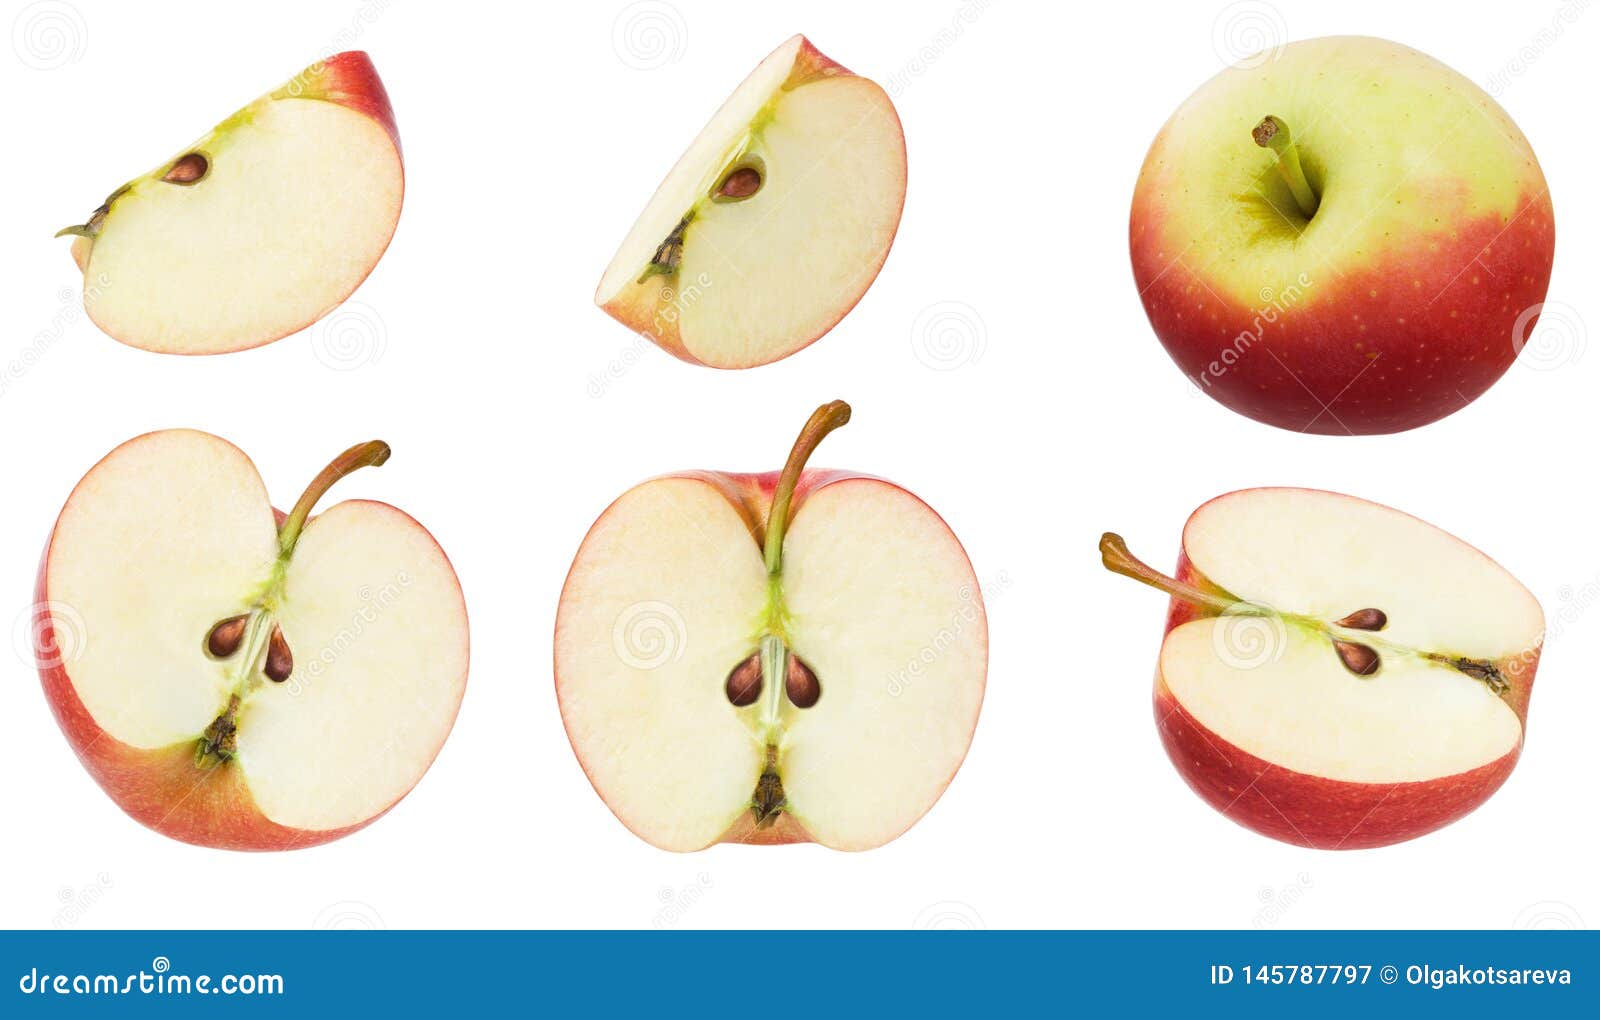 Две трети яблока. Половинка яблока. Четверть яблока. Целое яблоко. Яблоко пополам.